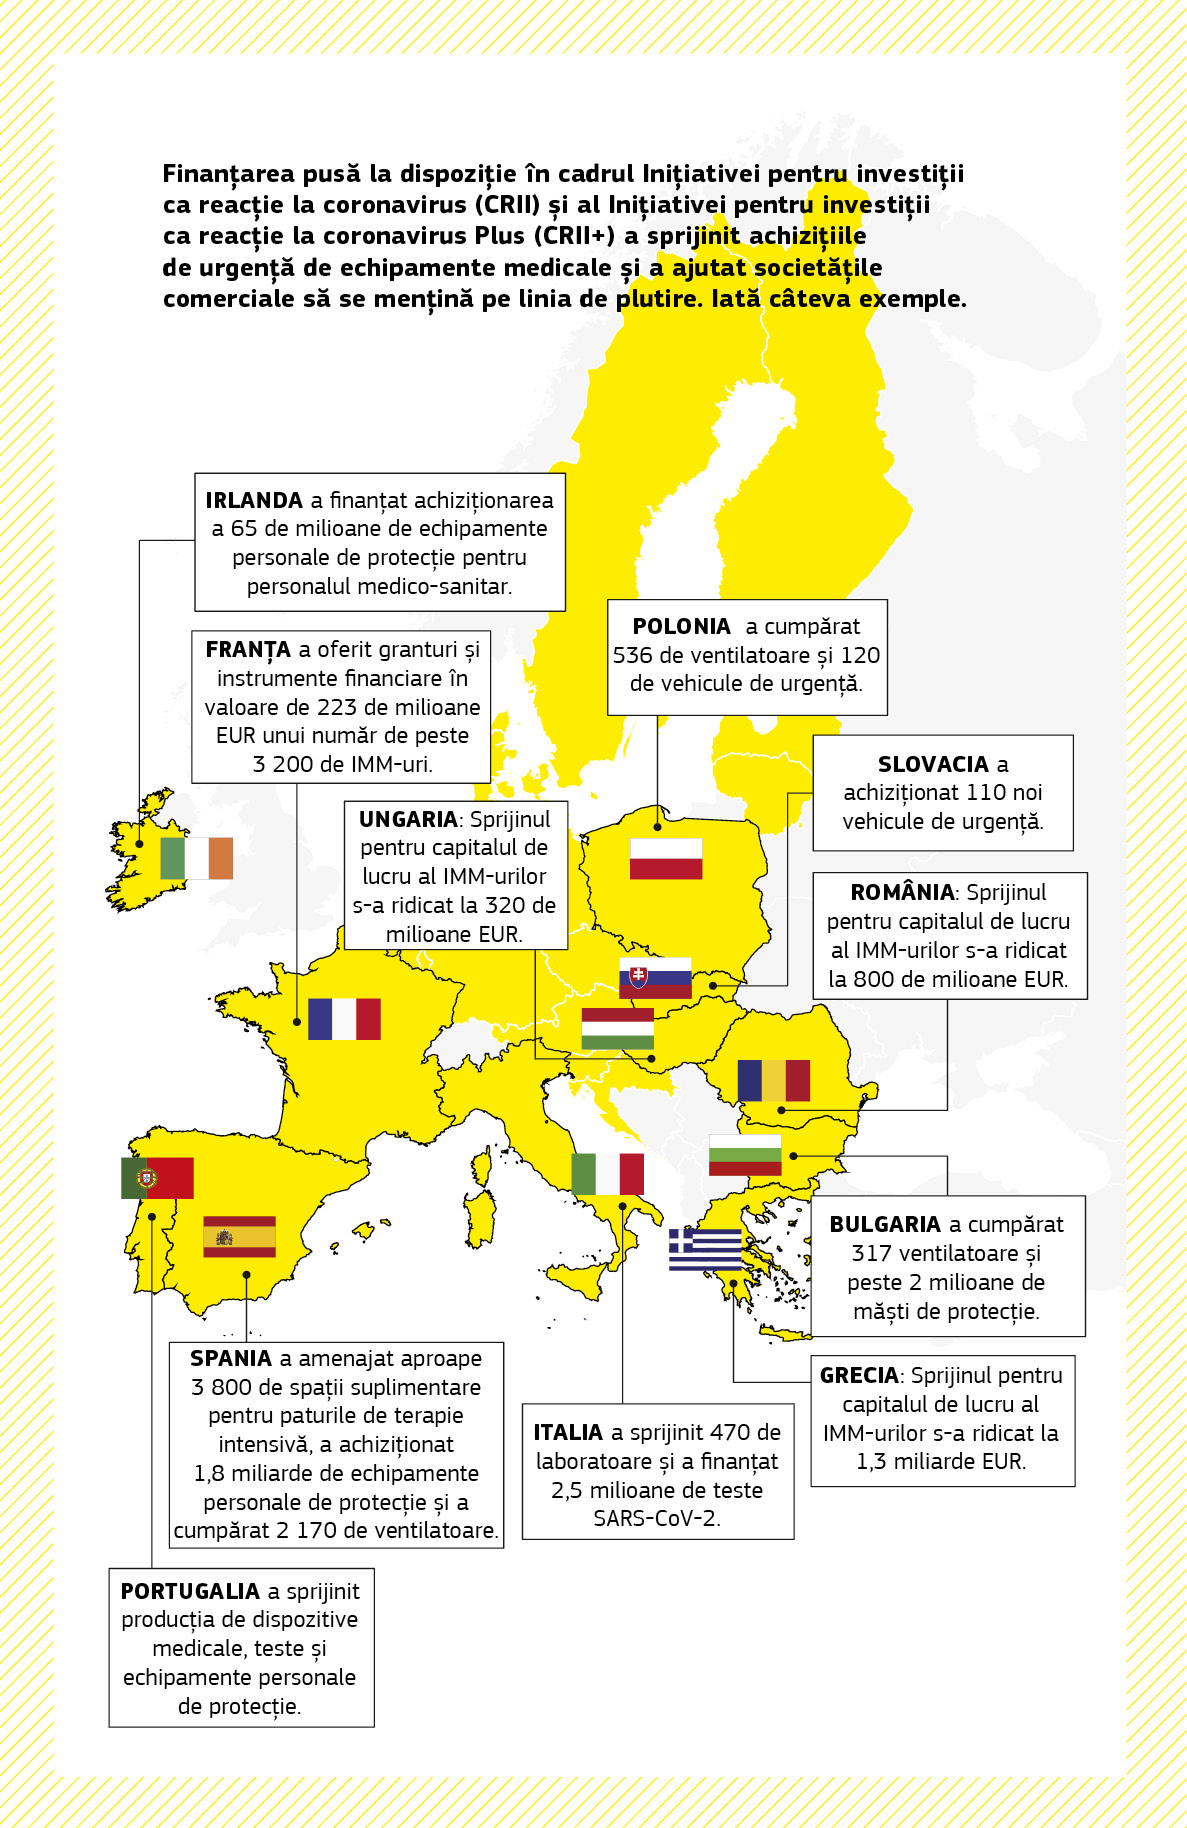 O hartă care sintetizează o serie de proiecte de sprijin pentru combaterea pandemiei, finanțate prin Inițiativa pentru investiții ca reacție la coronavirus și Inițiativa pentru investiții ca reacție la coronavirus Plus în mai multe state membre ale Uniunii Europene.